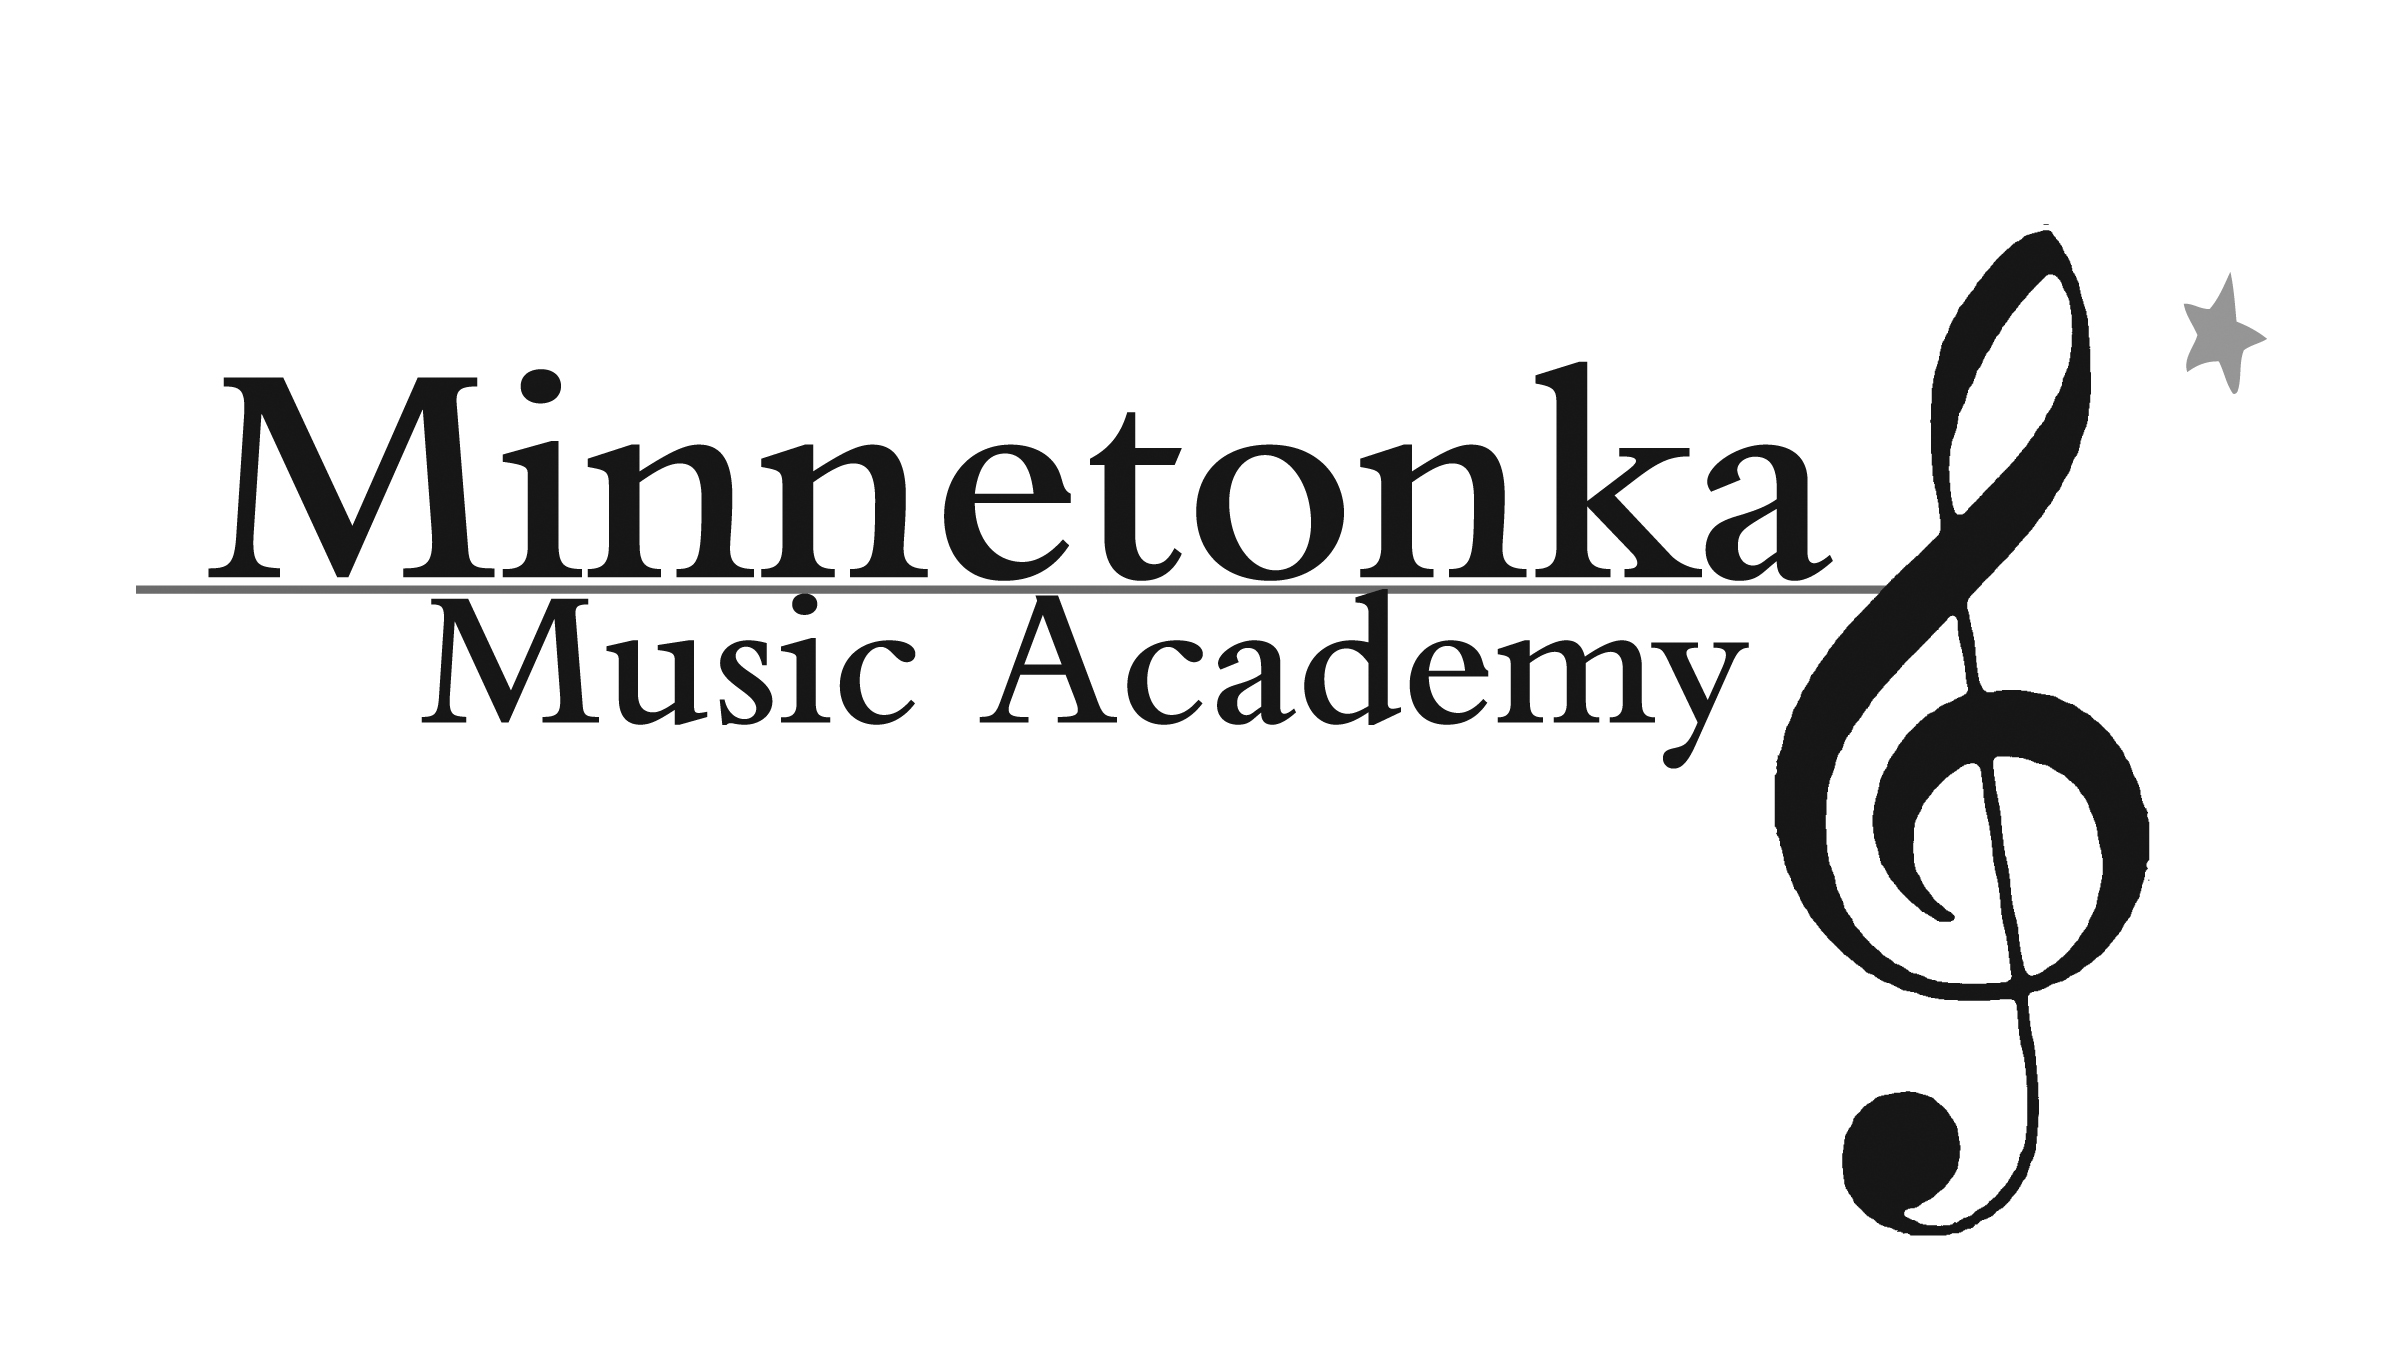 أكاديمية مينيتونكا للموسيقى